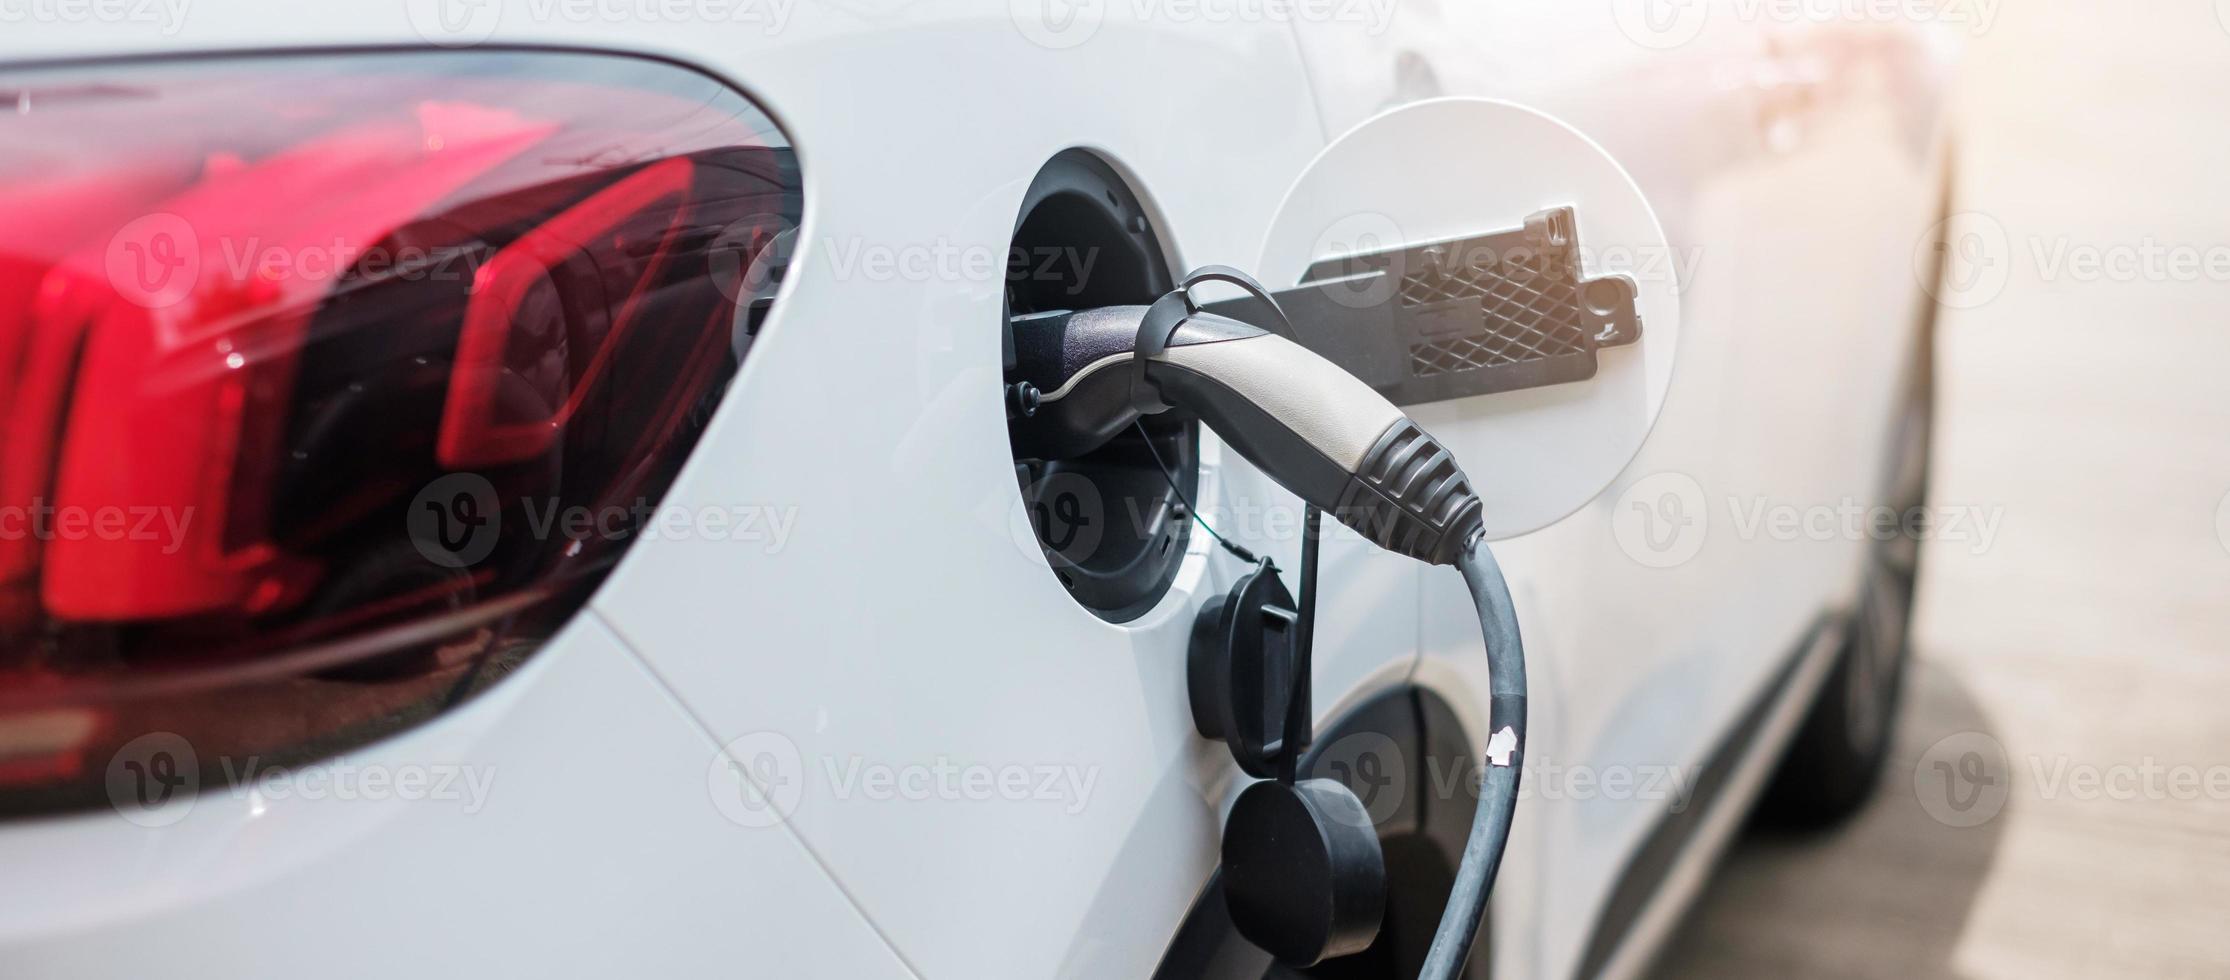 elektrische auto opladen batterij bij ev laadstation of thuis. groene energie, milieuvriendelijk alternatief, technologie en milieuconcepten foto